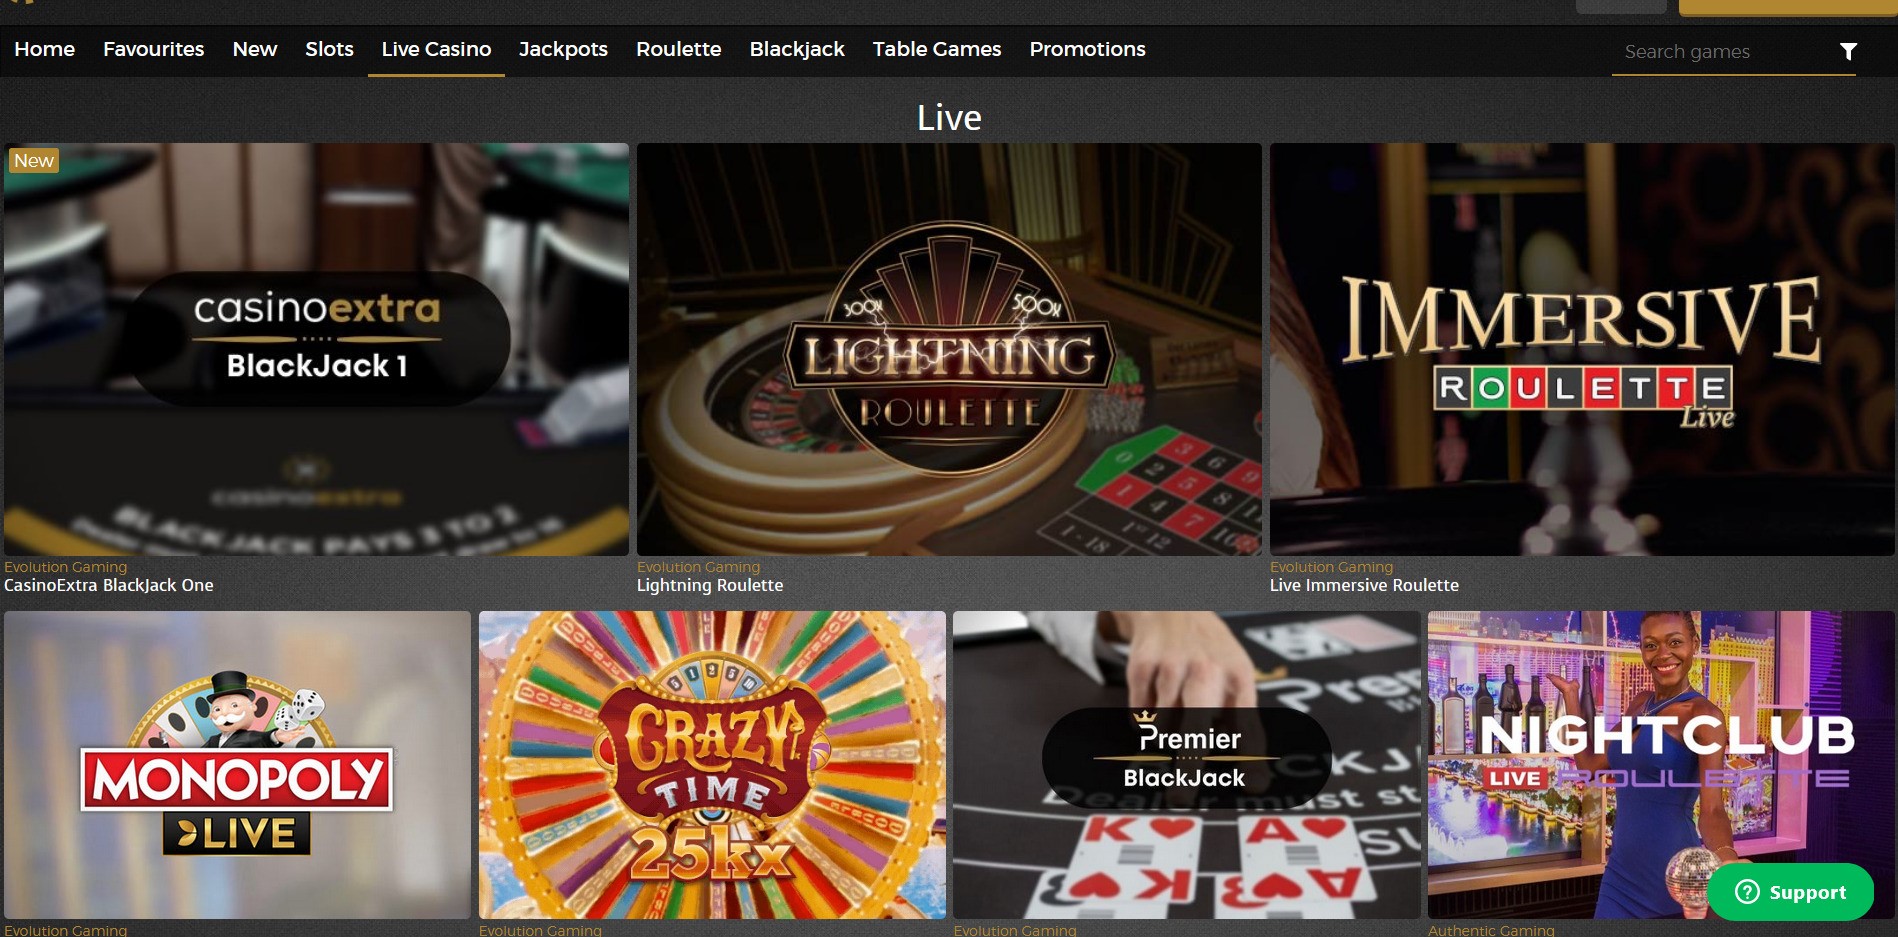 Casino Extra Live Dealer Games